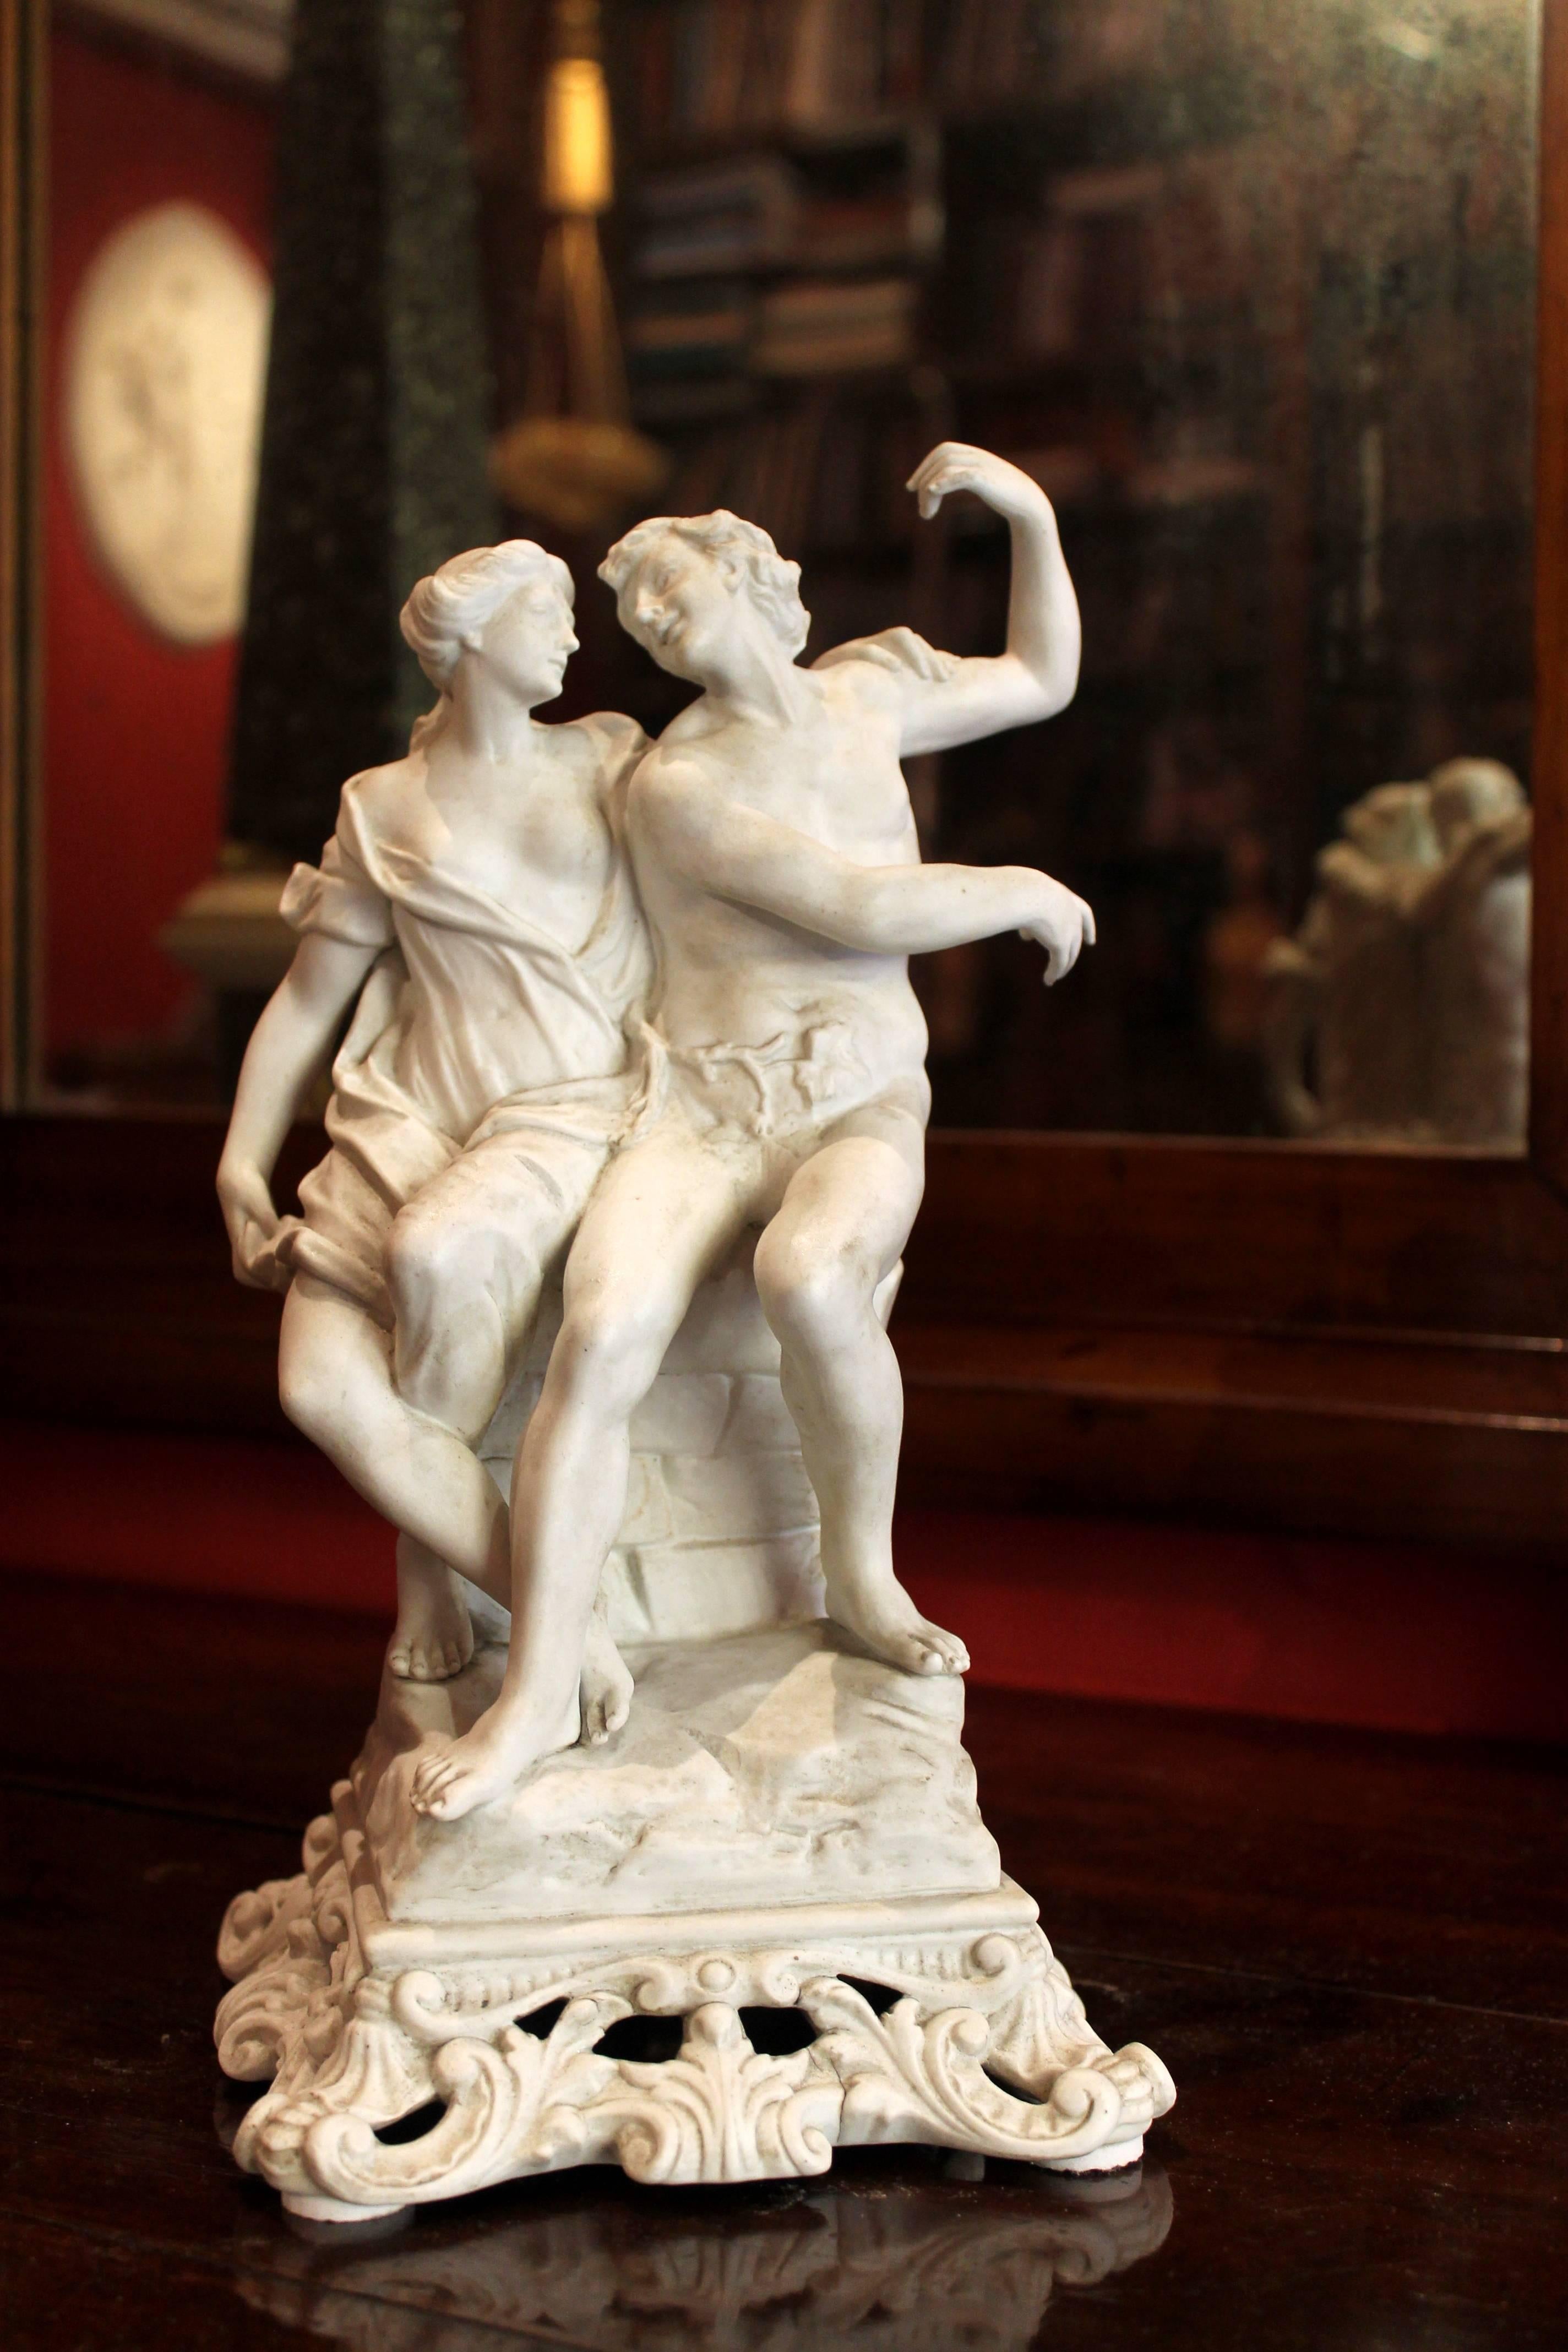 Une belle figurine italienne ancienne en biscuit de porcelaine blanche de Capodimonte représentant un homme et une femme sculptés en rond dans un moment très romantique. Ce groupe de pièces centrales présente deux jeunes amants nus et drapés assis